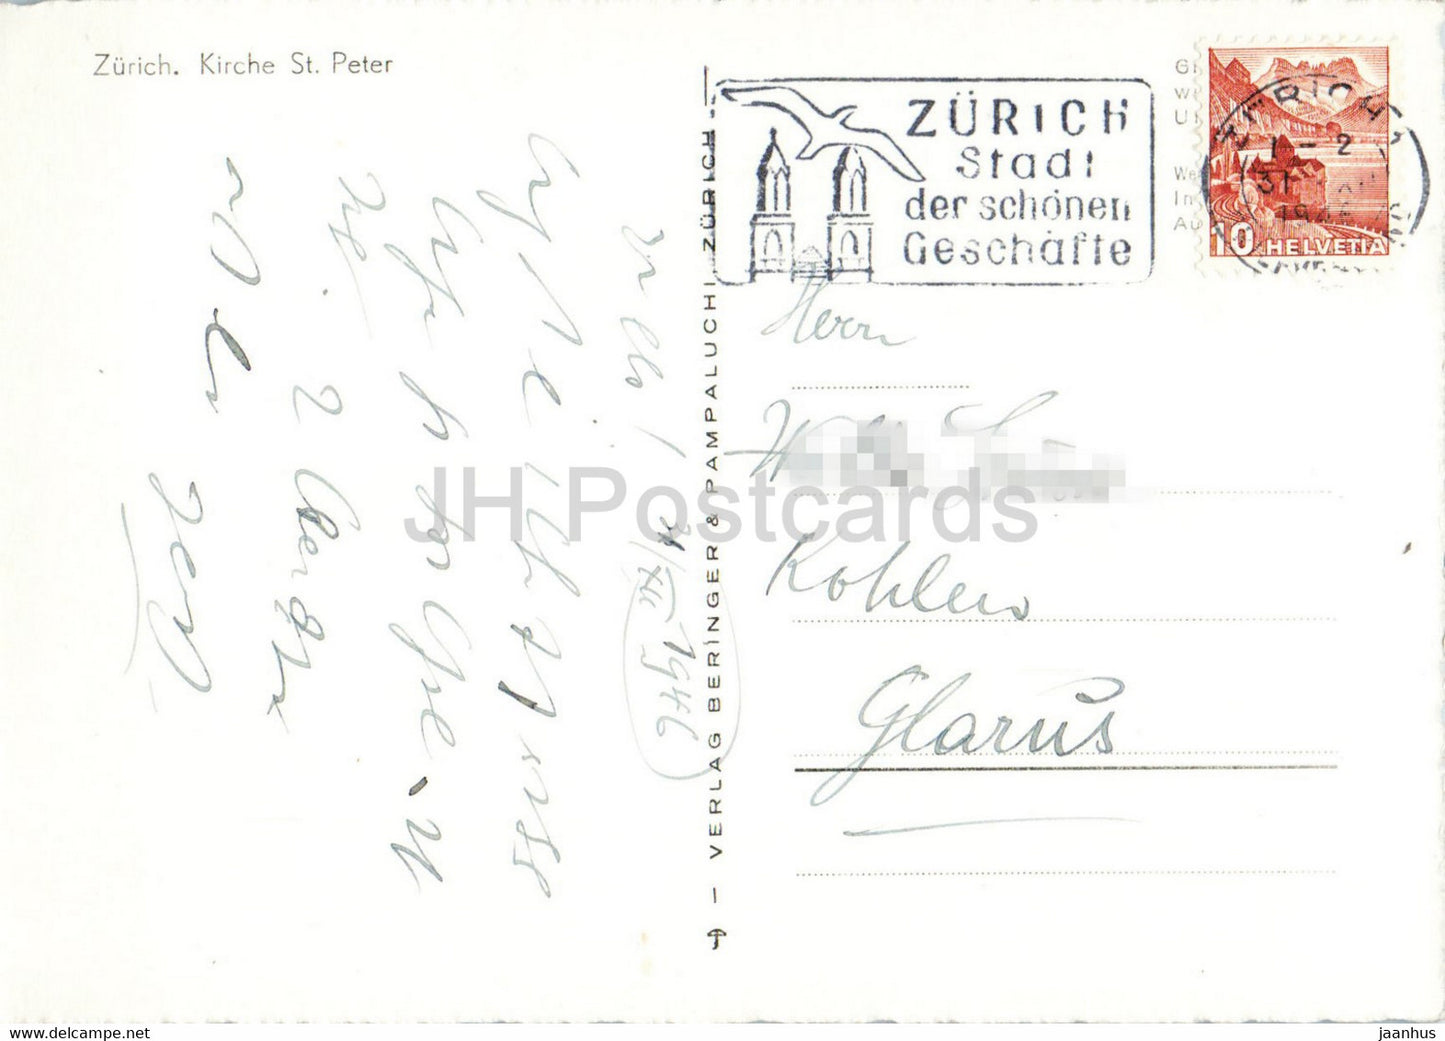 Zurich - Kirche St Peter - church - Herzliche Neujahrswunsche - 1946 - old postcard - Switzerland - used